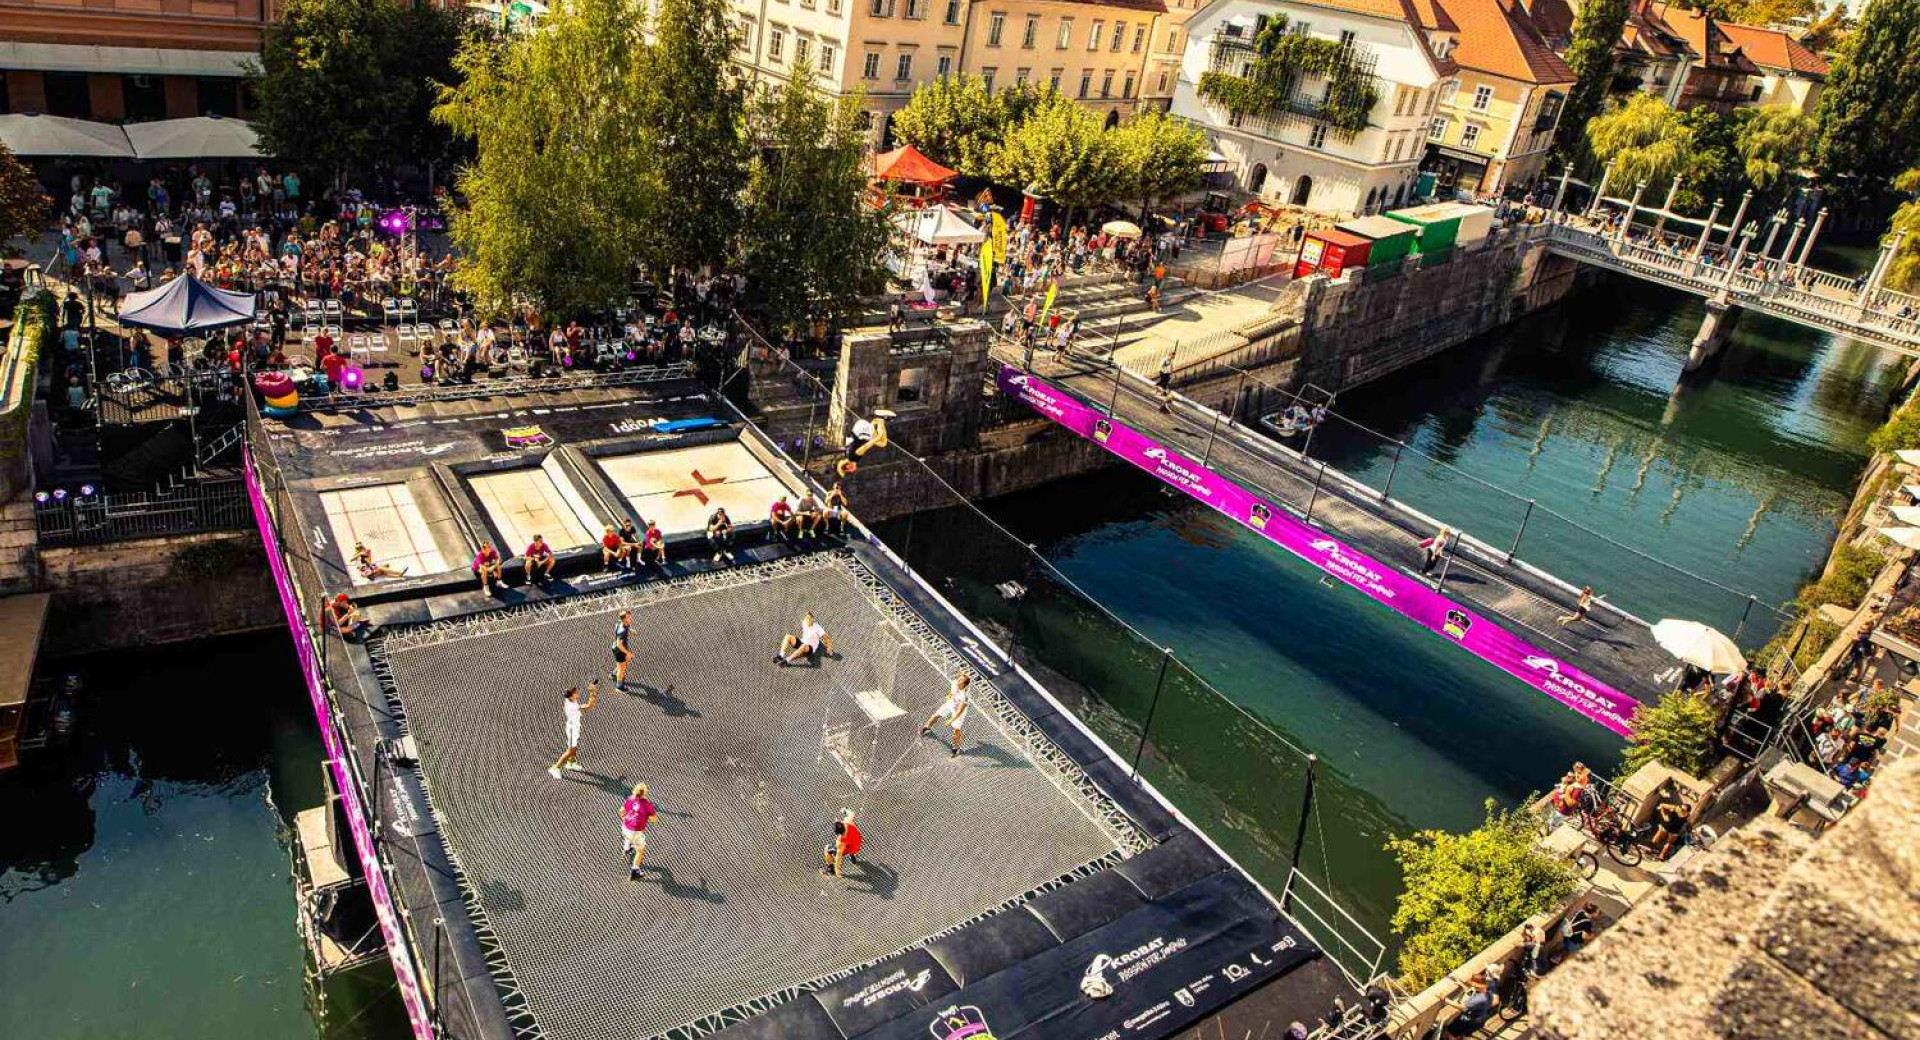 Utrinek z dogodka WOOP! Odbito na Ljubljanici/Made by Akrobat; na Ljubljanici sta velik trampolin in trampolinski most, na nabrežju gledalci, 2022